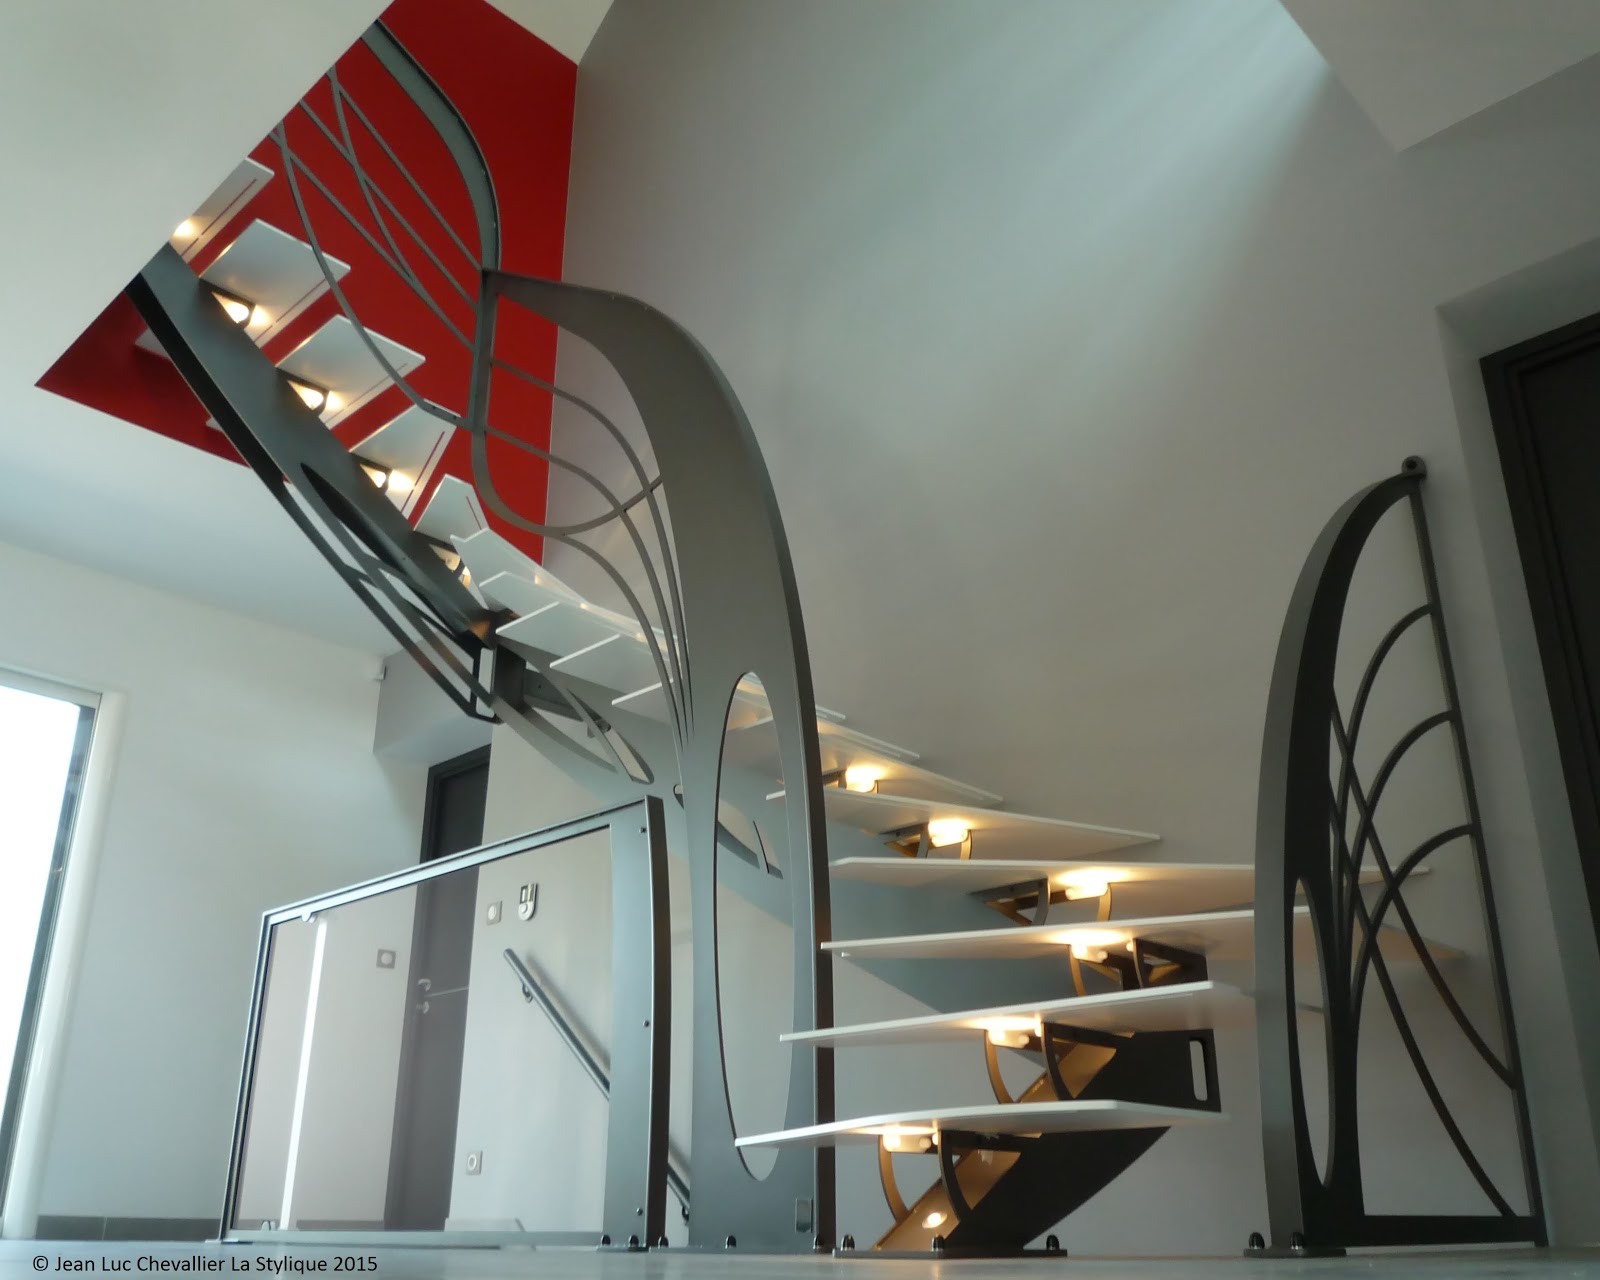 La Stylique Escalier double quart tournant sculpture